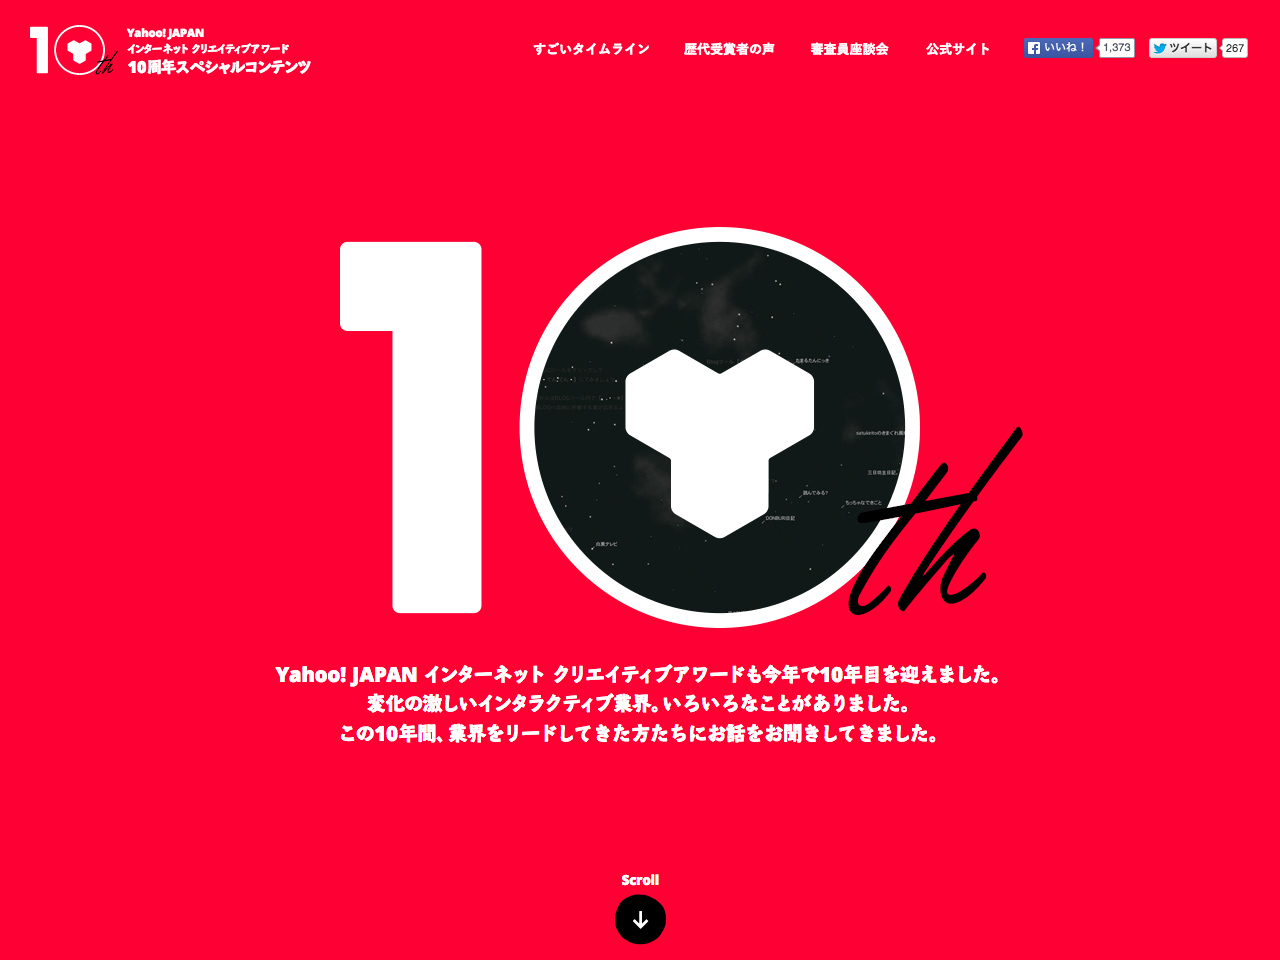 Yahoo! JAPAN インターネット クリエイティブアワード 10周年スペシャルコンテンツ